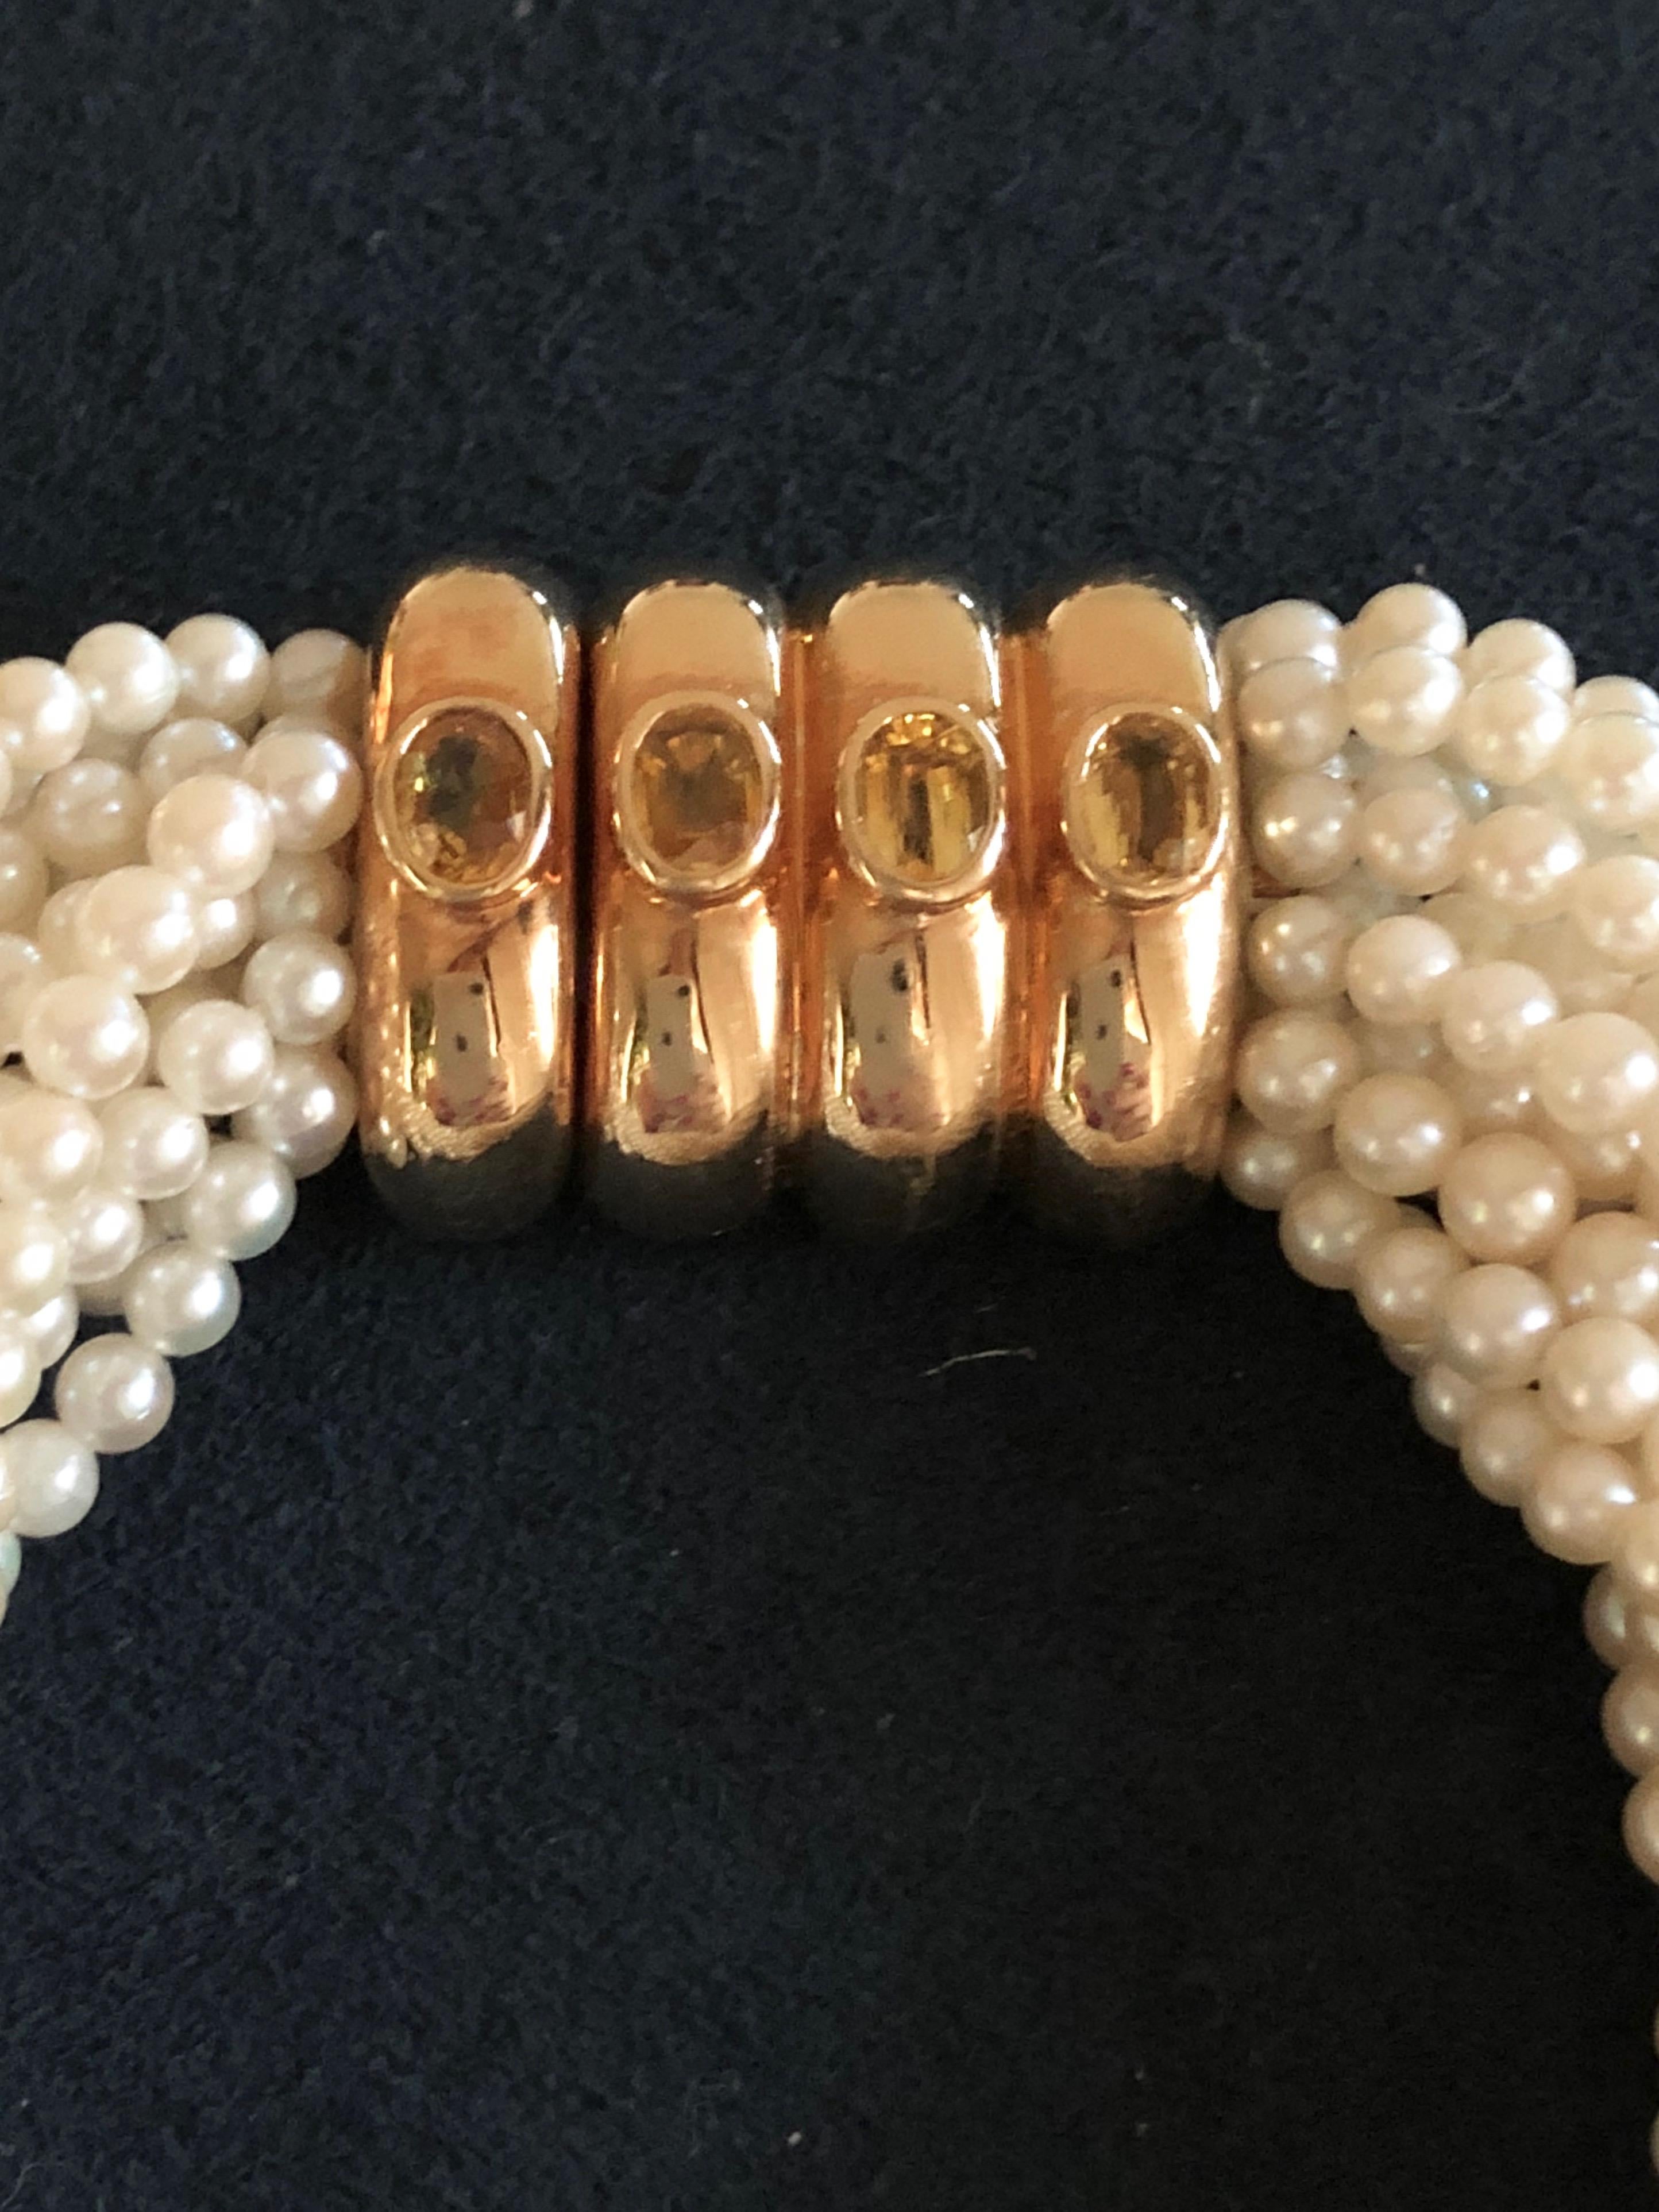 Bracelet torsade élégant et sophistiqué composé de 14 rangs de perles d'Akoya. 
Le fermoir à 4 bandes en or 18K porte la marque du fabricant Poiray. 
Longueur : 21,5 cm
Condition : Très bon
Livré avec : Pochette originale Poiray 

Tous les articles